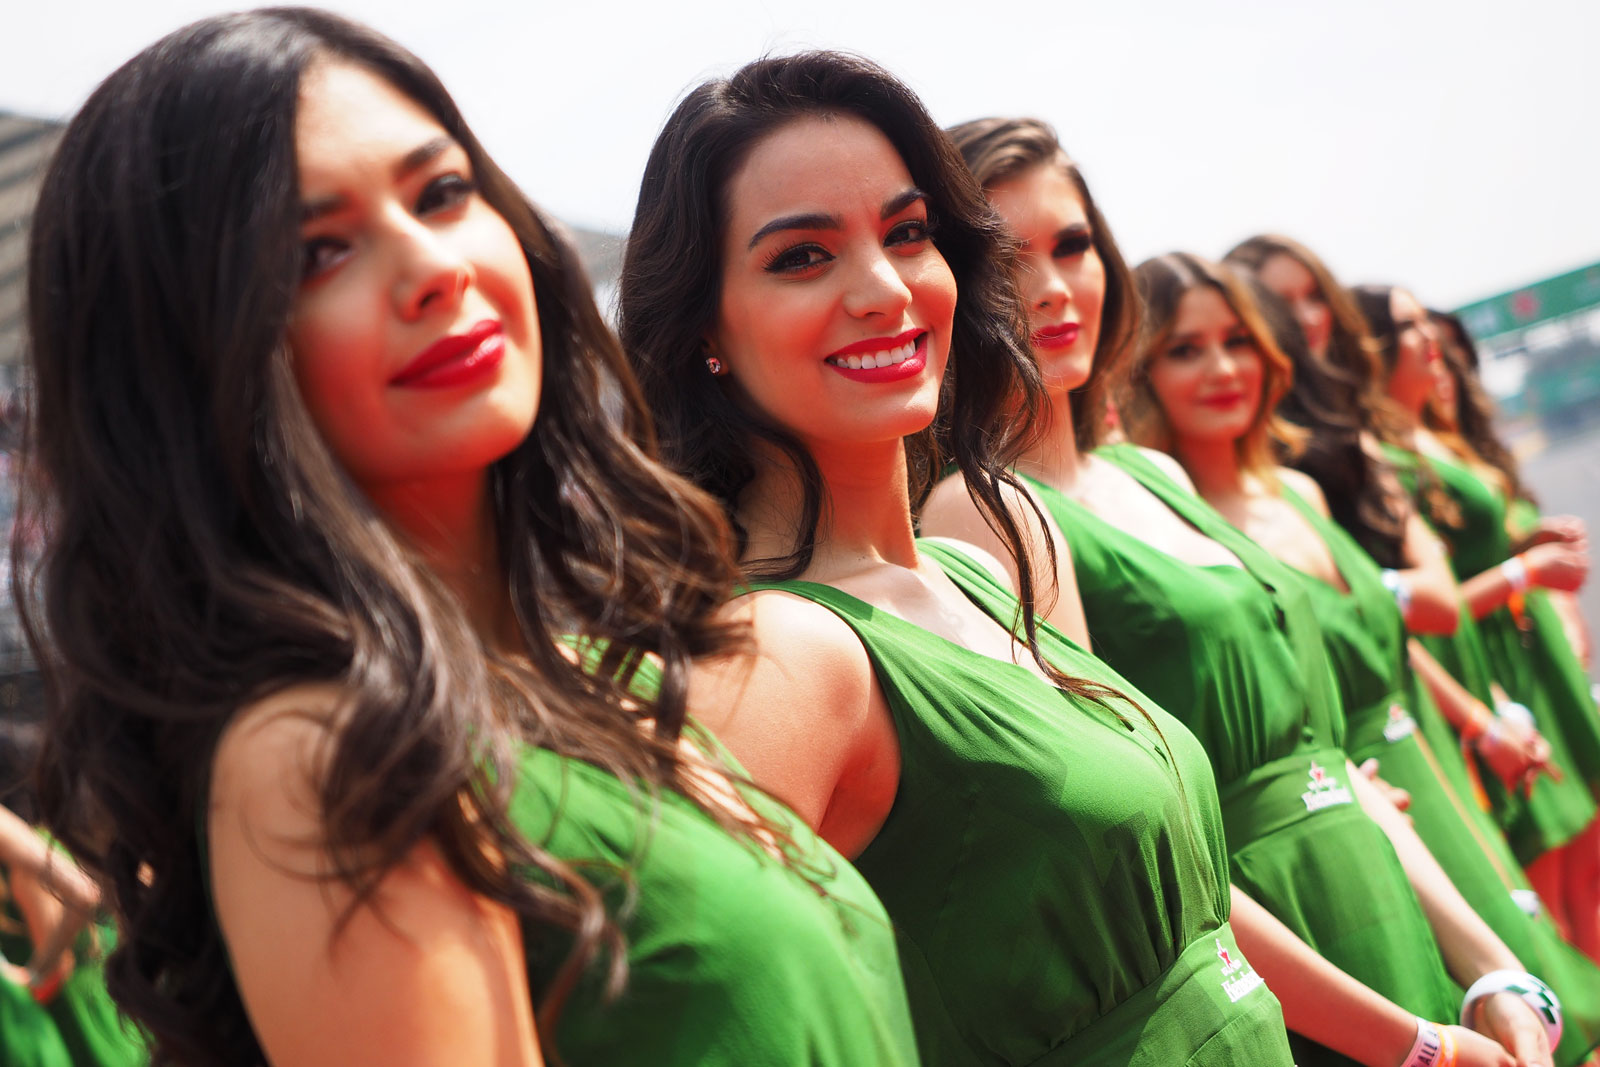 【F1ビューティー】2016 Rd.19 メキシコGP編「ハイネケンのメキシコ美女たち」（その1）